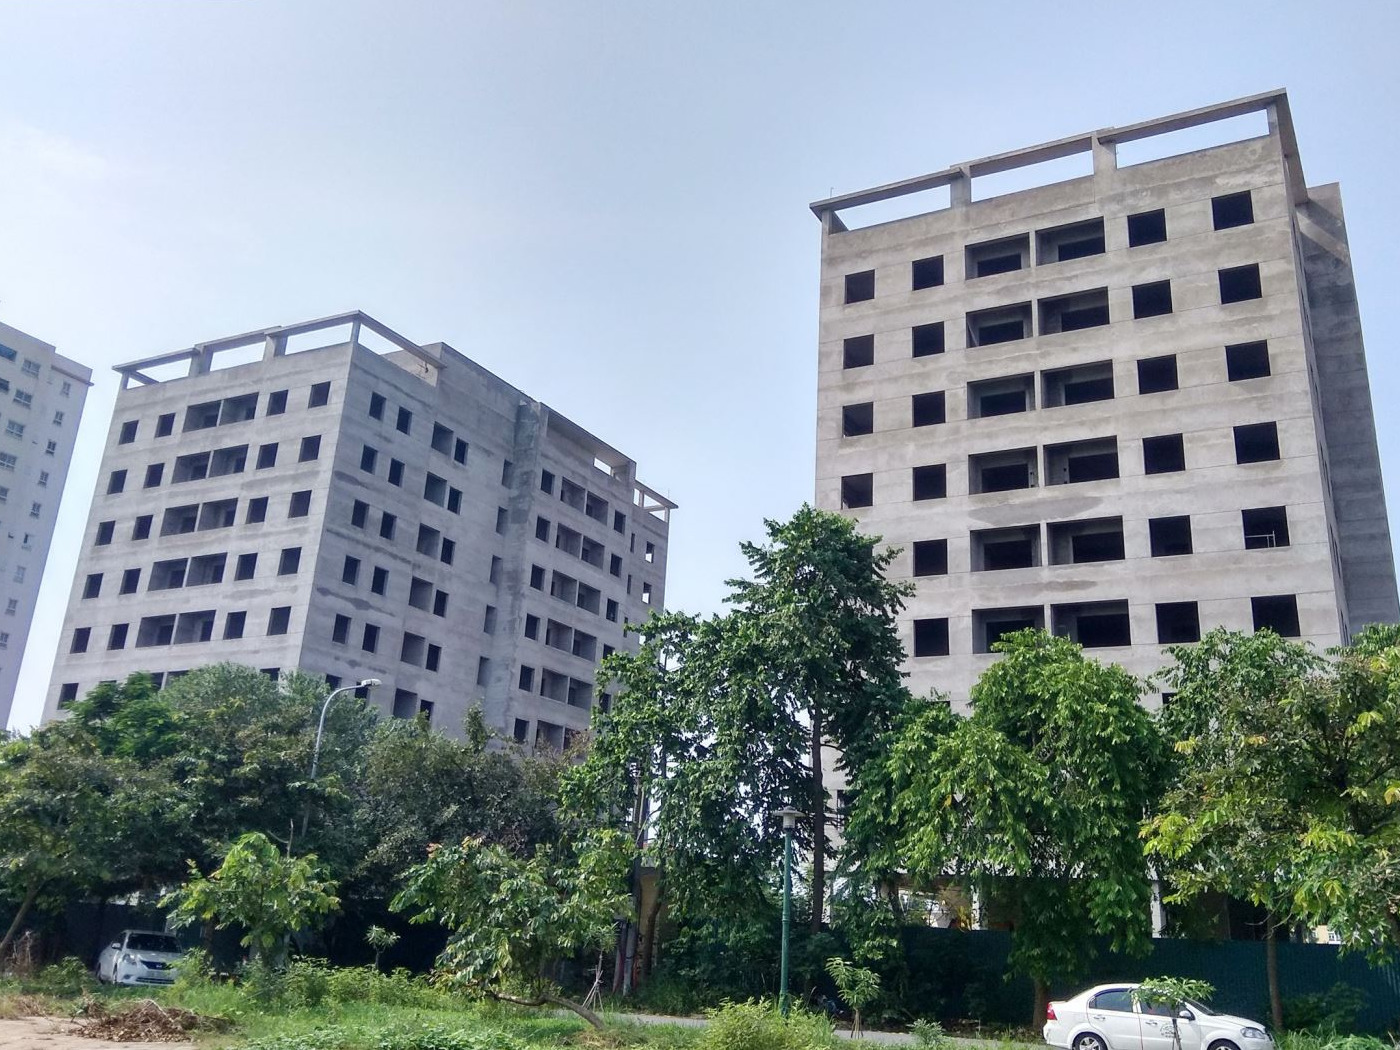 Mức giá dự kiến cho các căn hộ thuộc dự án nhà ở xã hội N07-1, N07-2 tại Khu nhà ở tại Sài Đồng, quận Long Biênlà 13,762 triệu đồng/m2. 